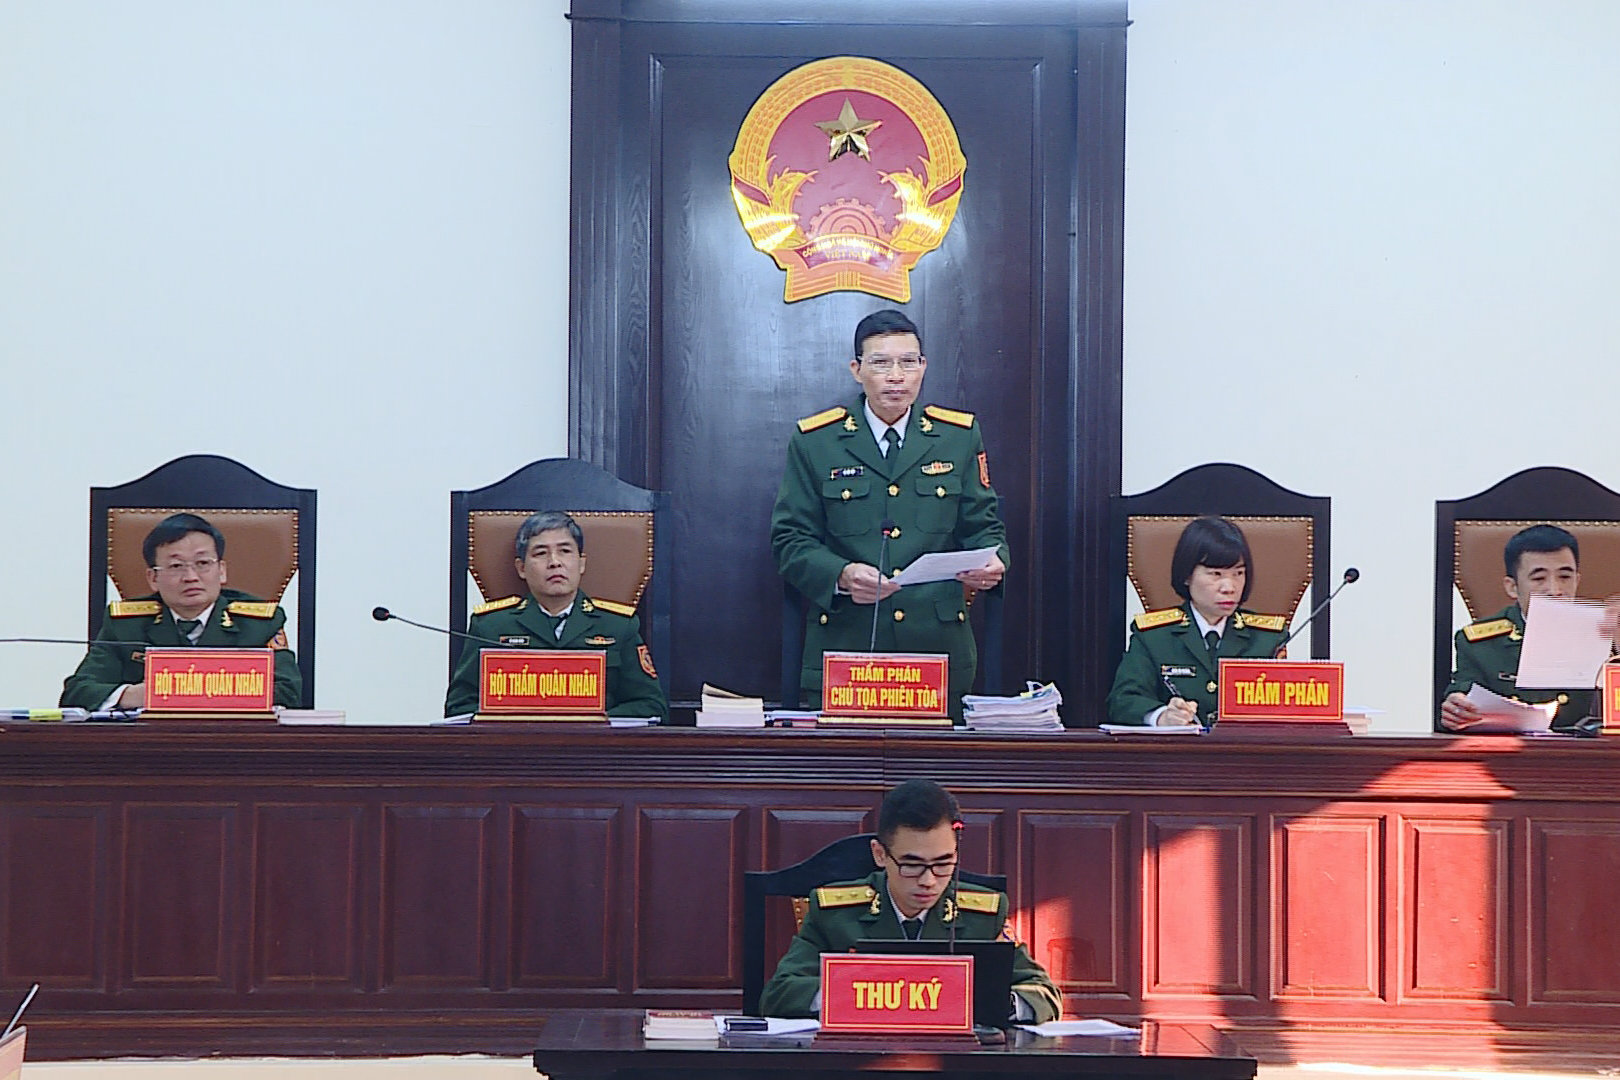 Tổng giám đốc Việt Á Phan Quốc Việt khai gì tại tòa án quân sự? - Ảnh 1.